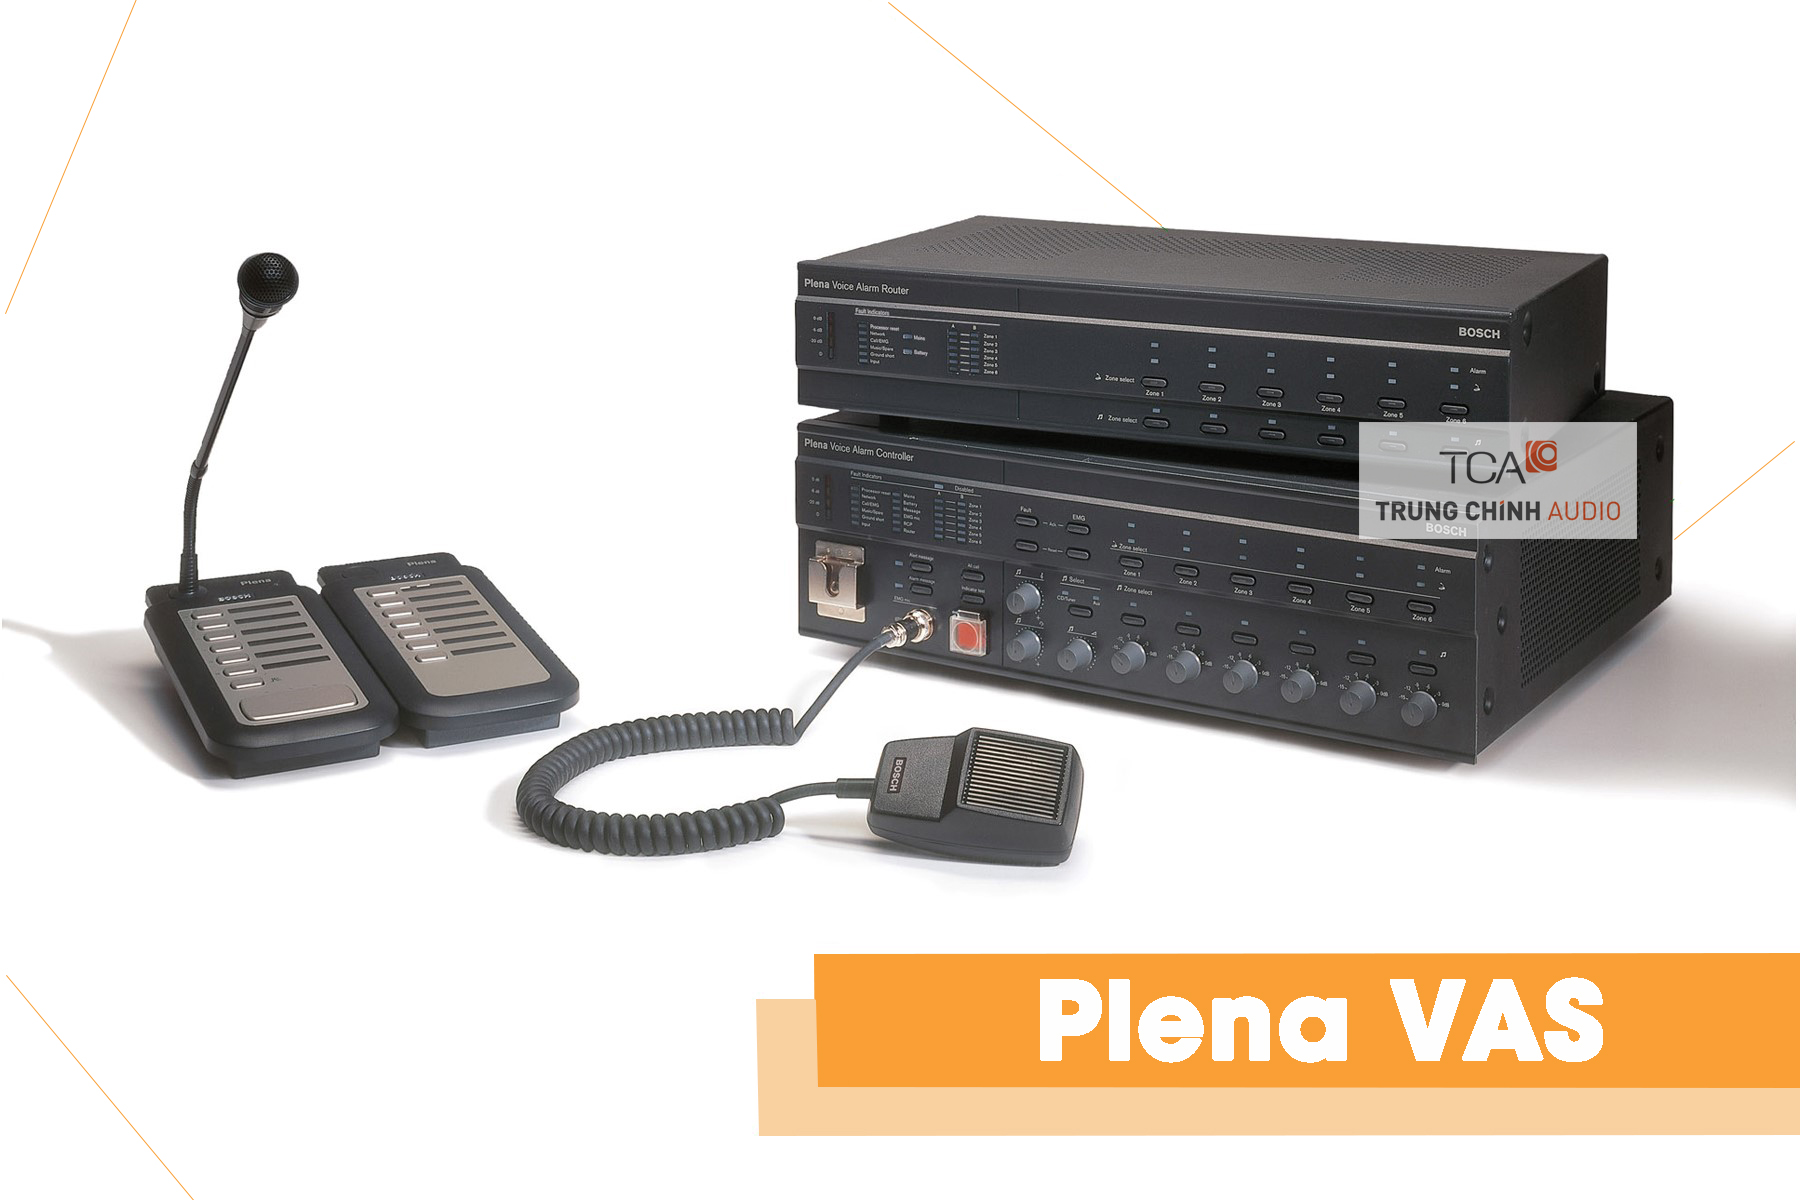 Bosch Plena VAS - Hệ thống âm thanh thông báo bằng giọng nói